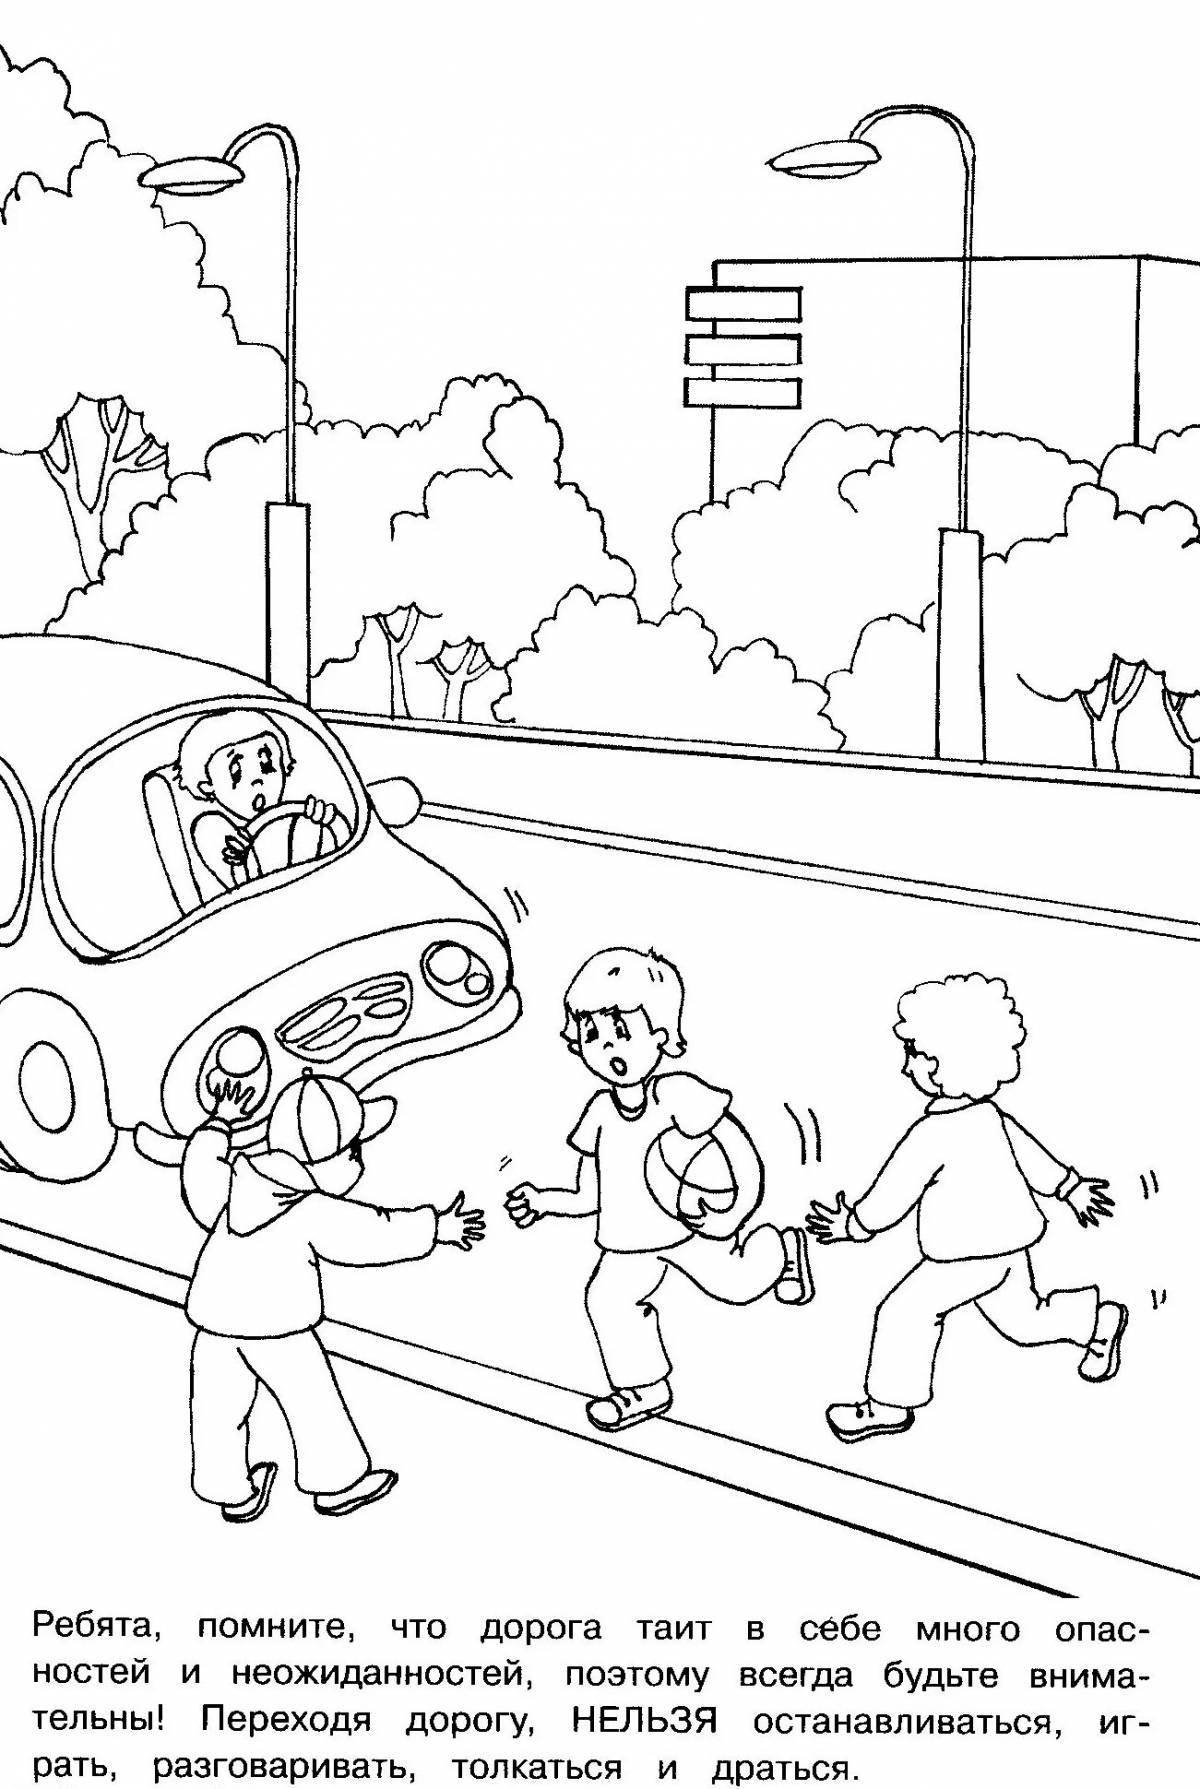 Smart traffic rules for schoolchildren